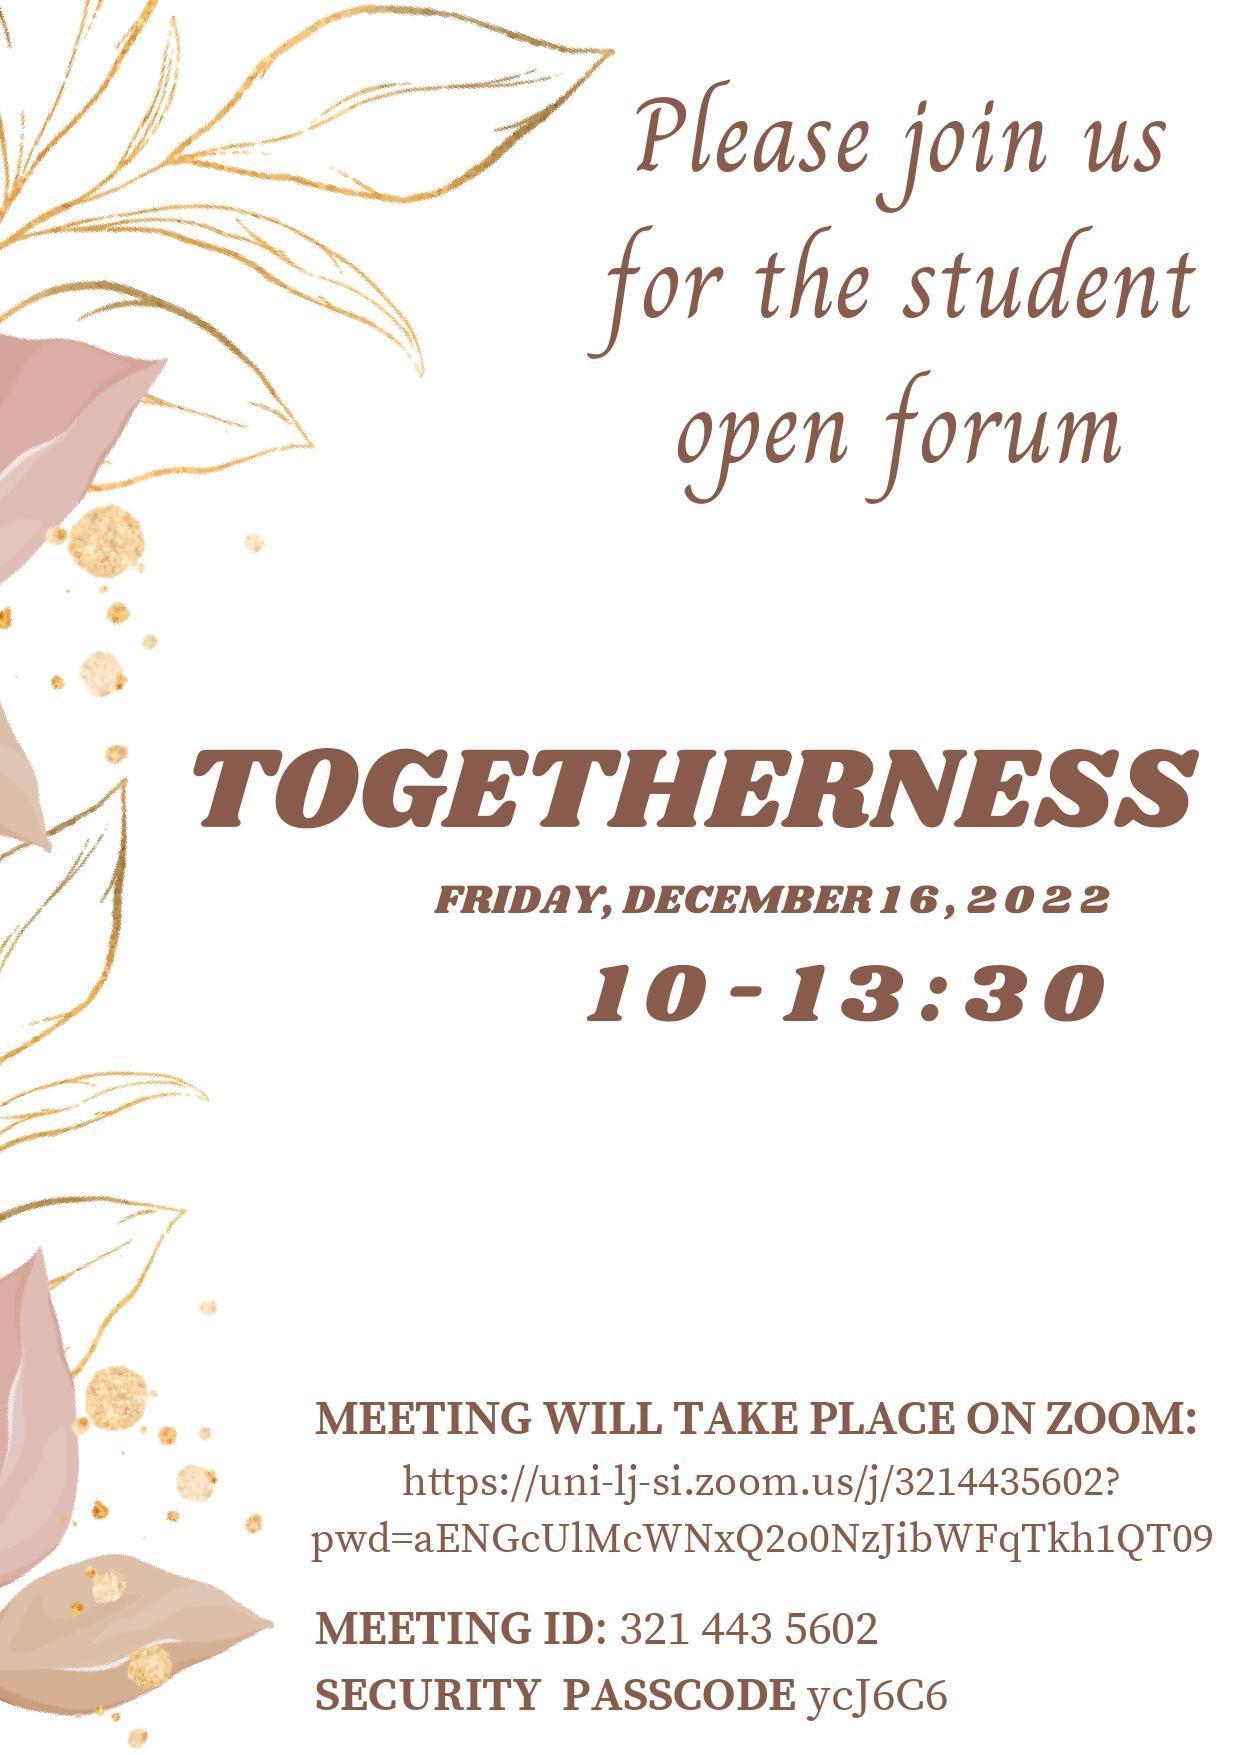 Student open forum